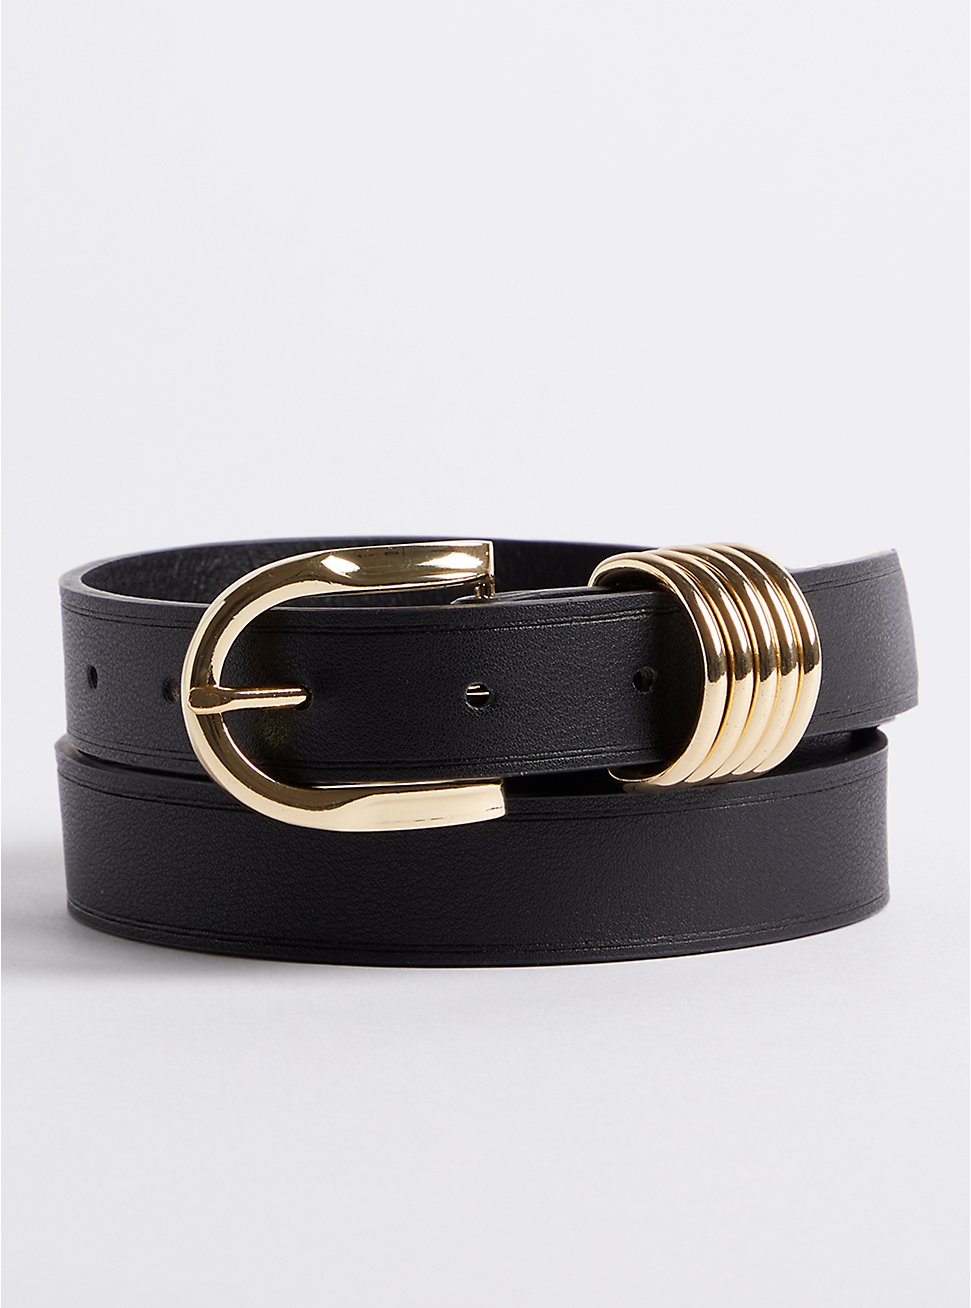 Plus Size Multi Ring Jean Belt - Black, BLACK, hi-res